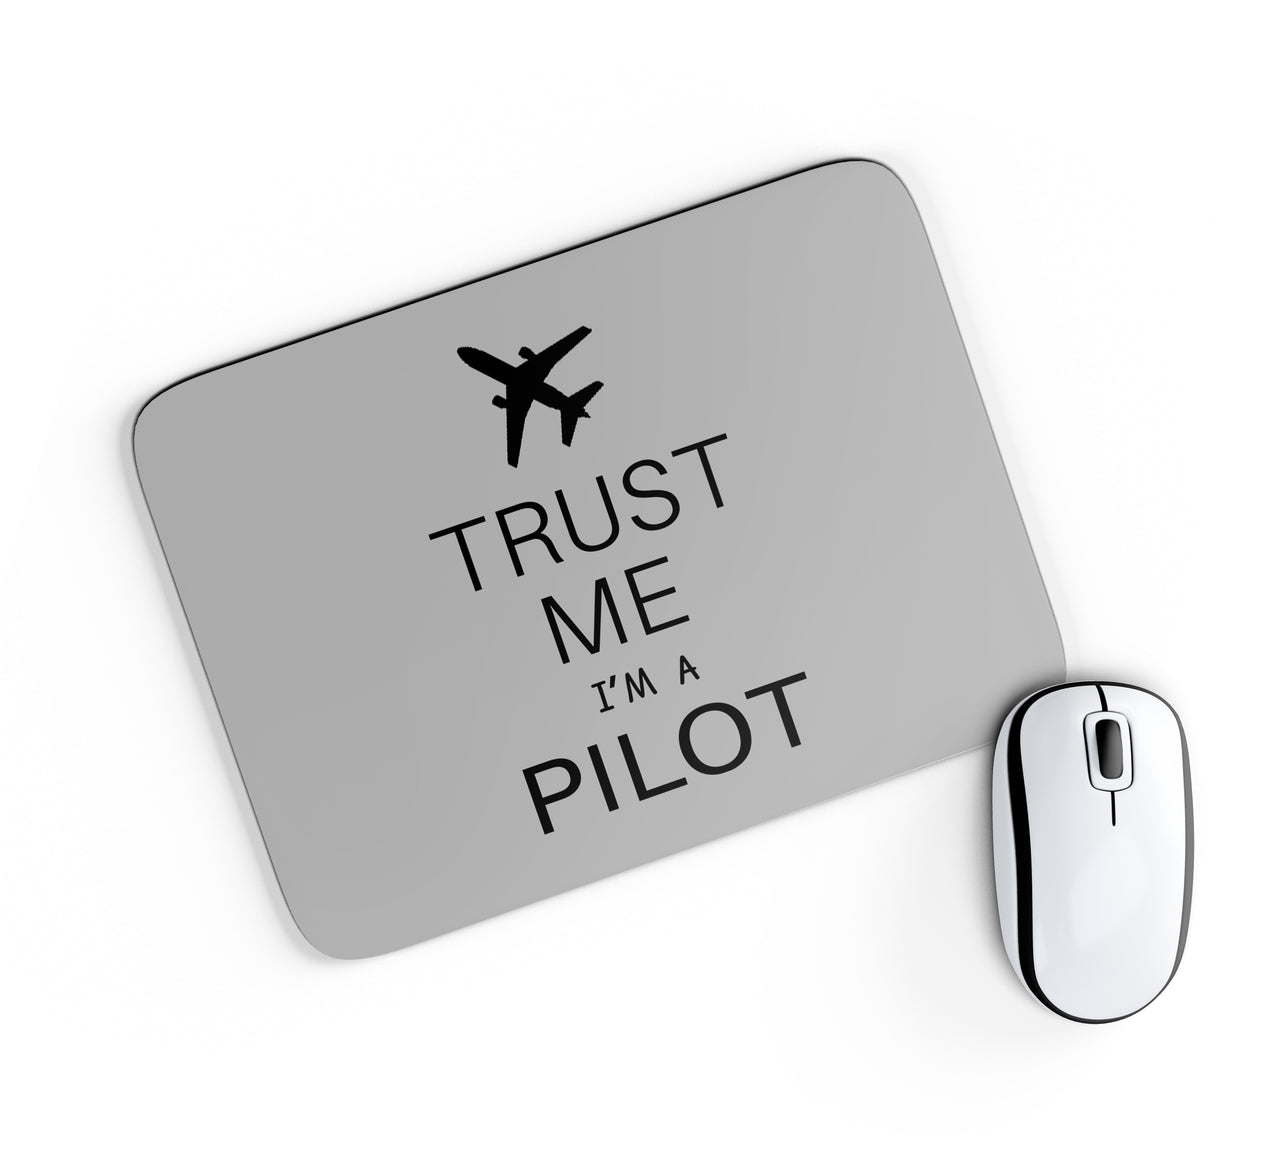 Trust Me I'm a Pilot 2 Designed Mouse Pads